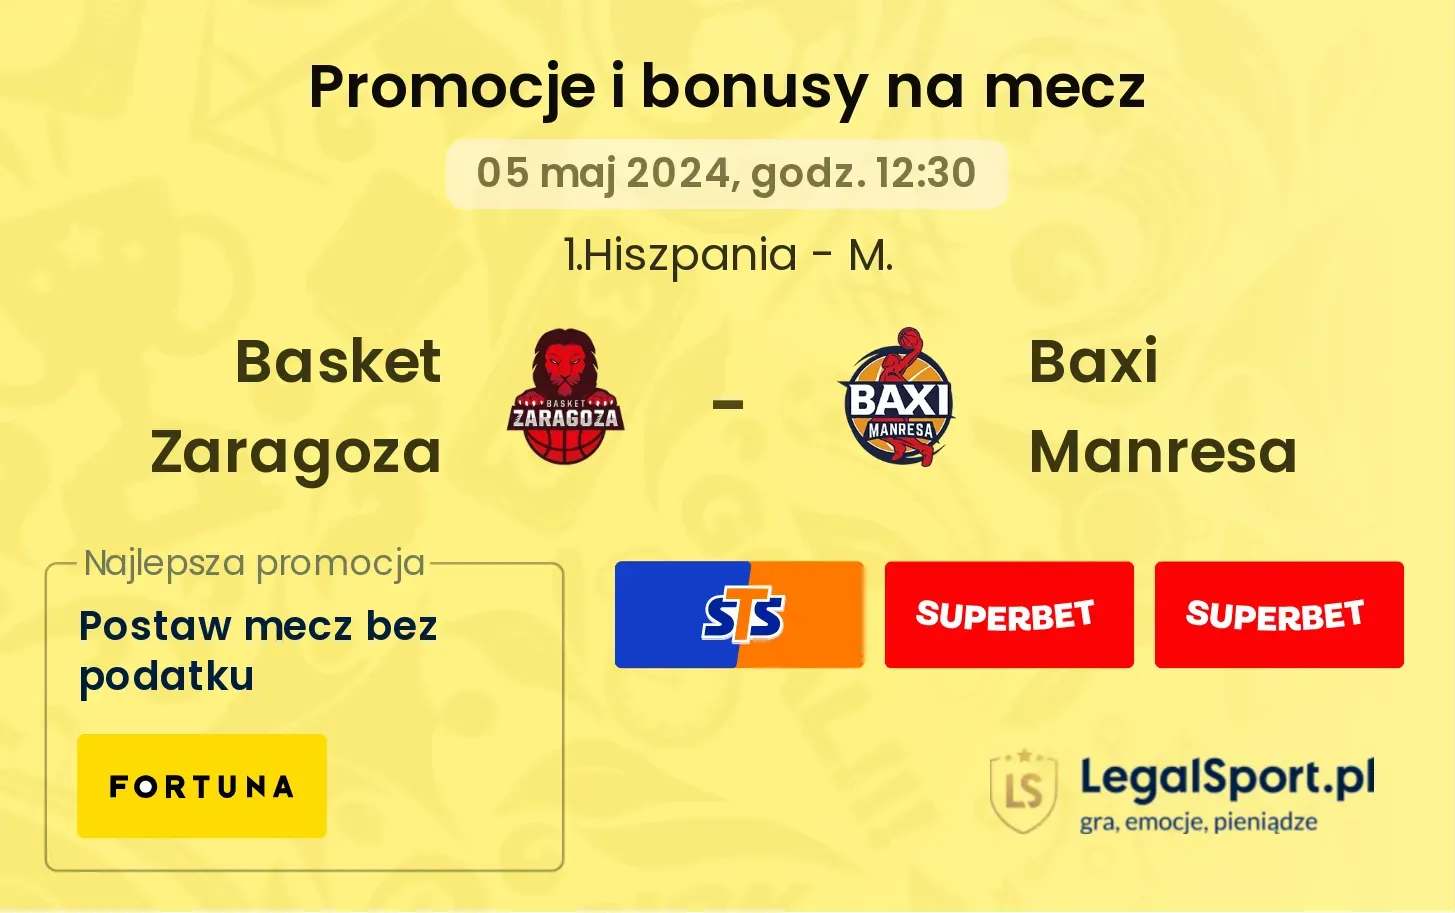 Basket Zaragoza - Baxi Manresa promocje bonusy na mecz